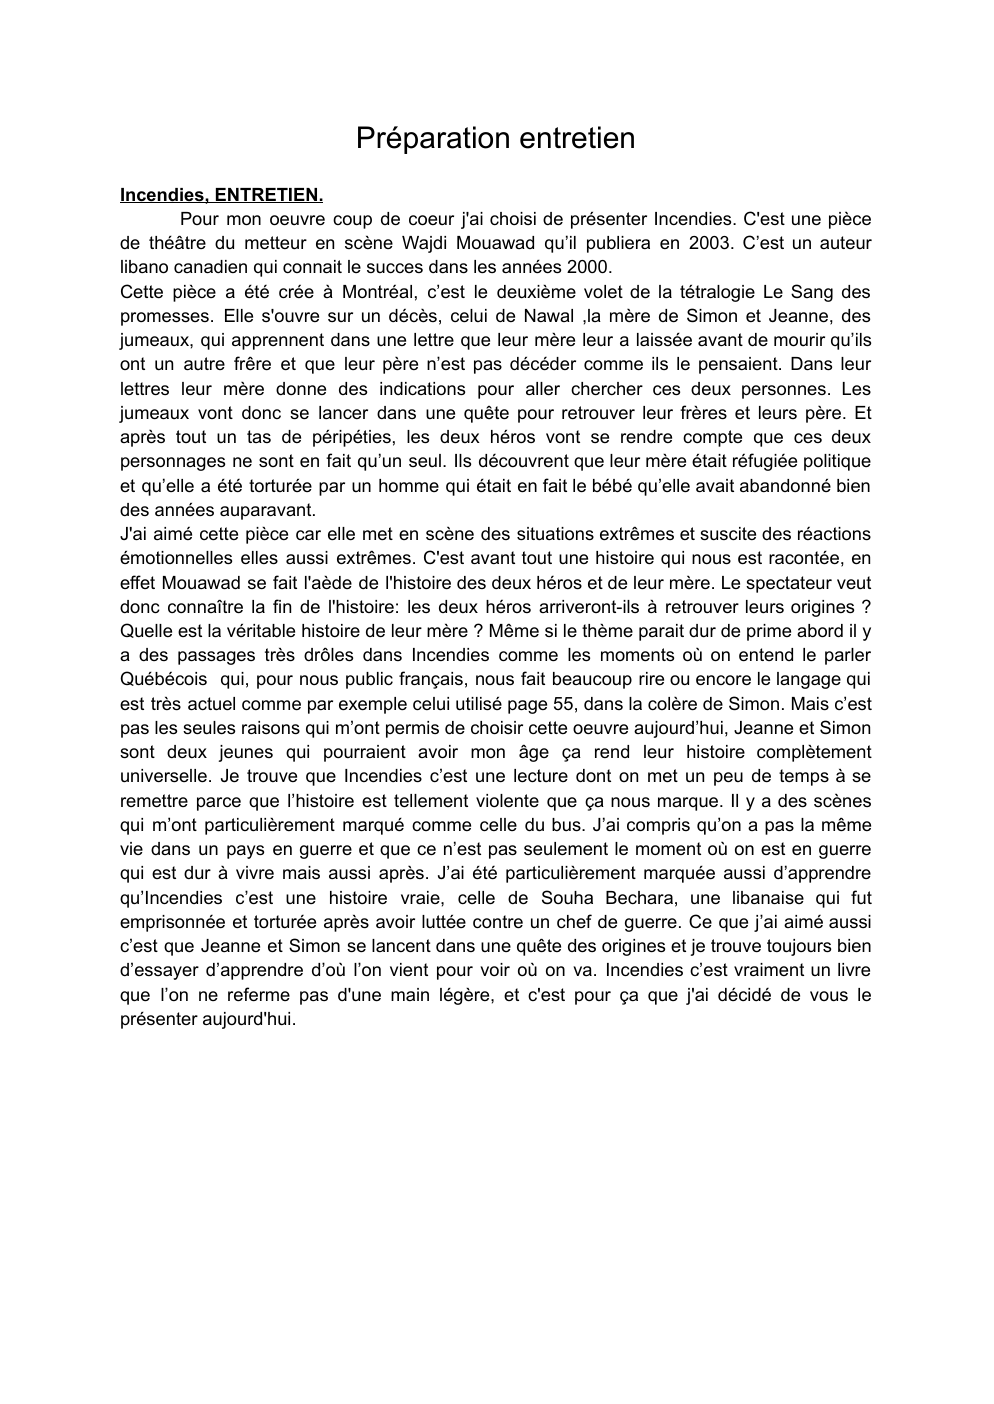 Prévisualisation du document présentation de l'oeuvre "Incendie", oral de bac de français